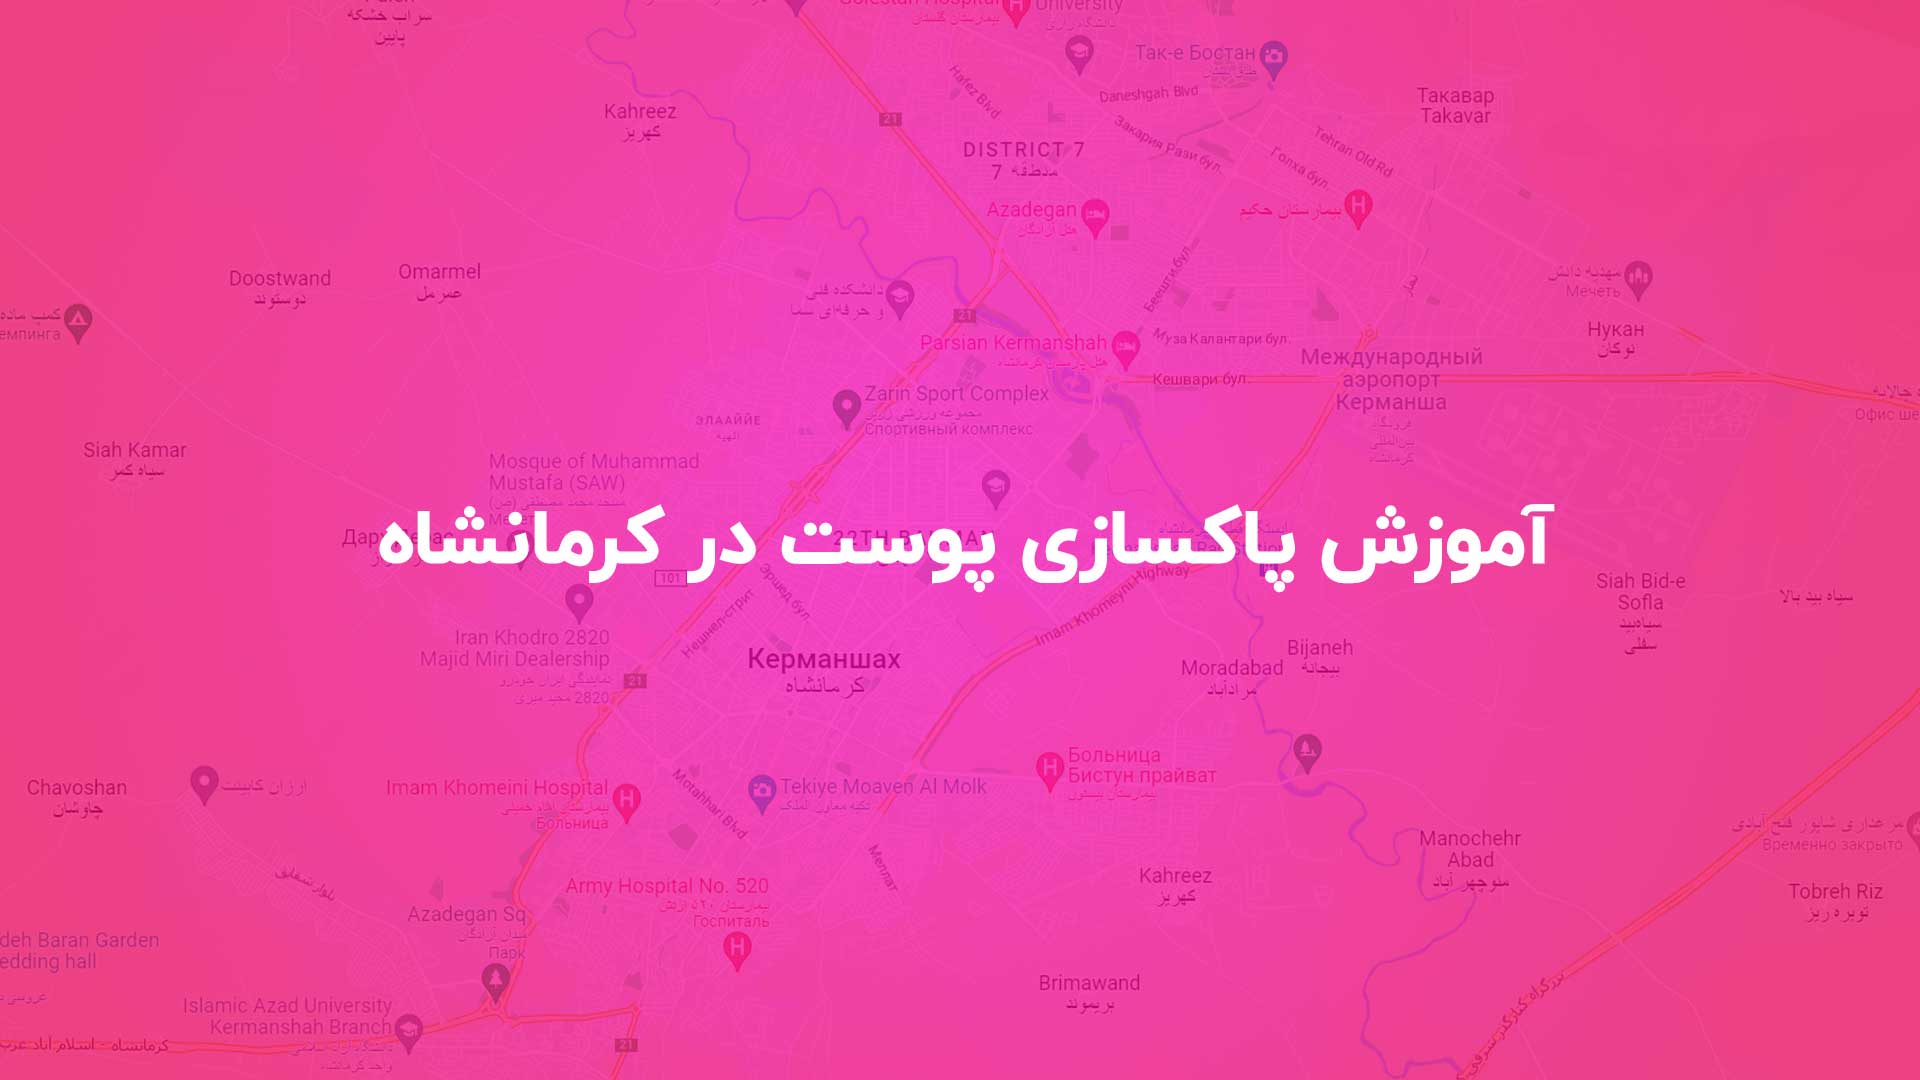 آموزش پاکسازی پوست در کرمانشاه